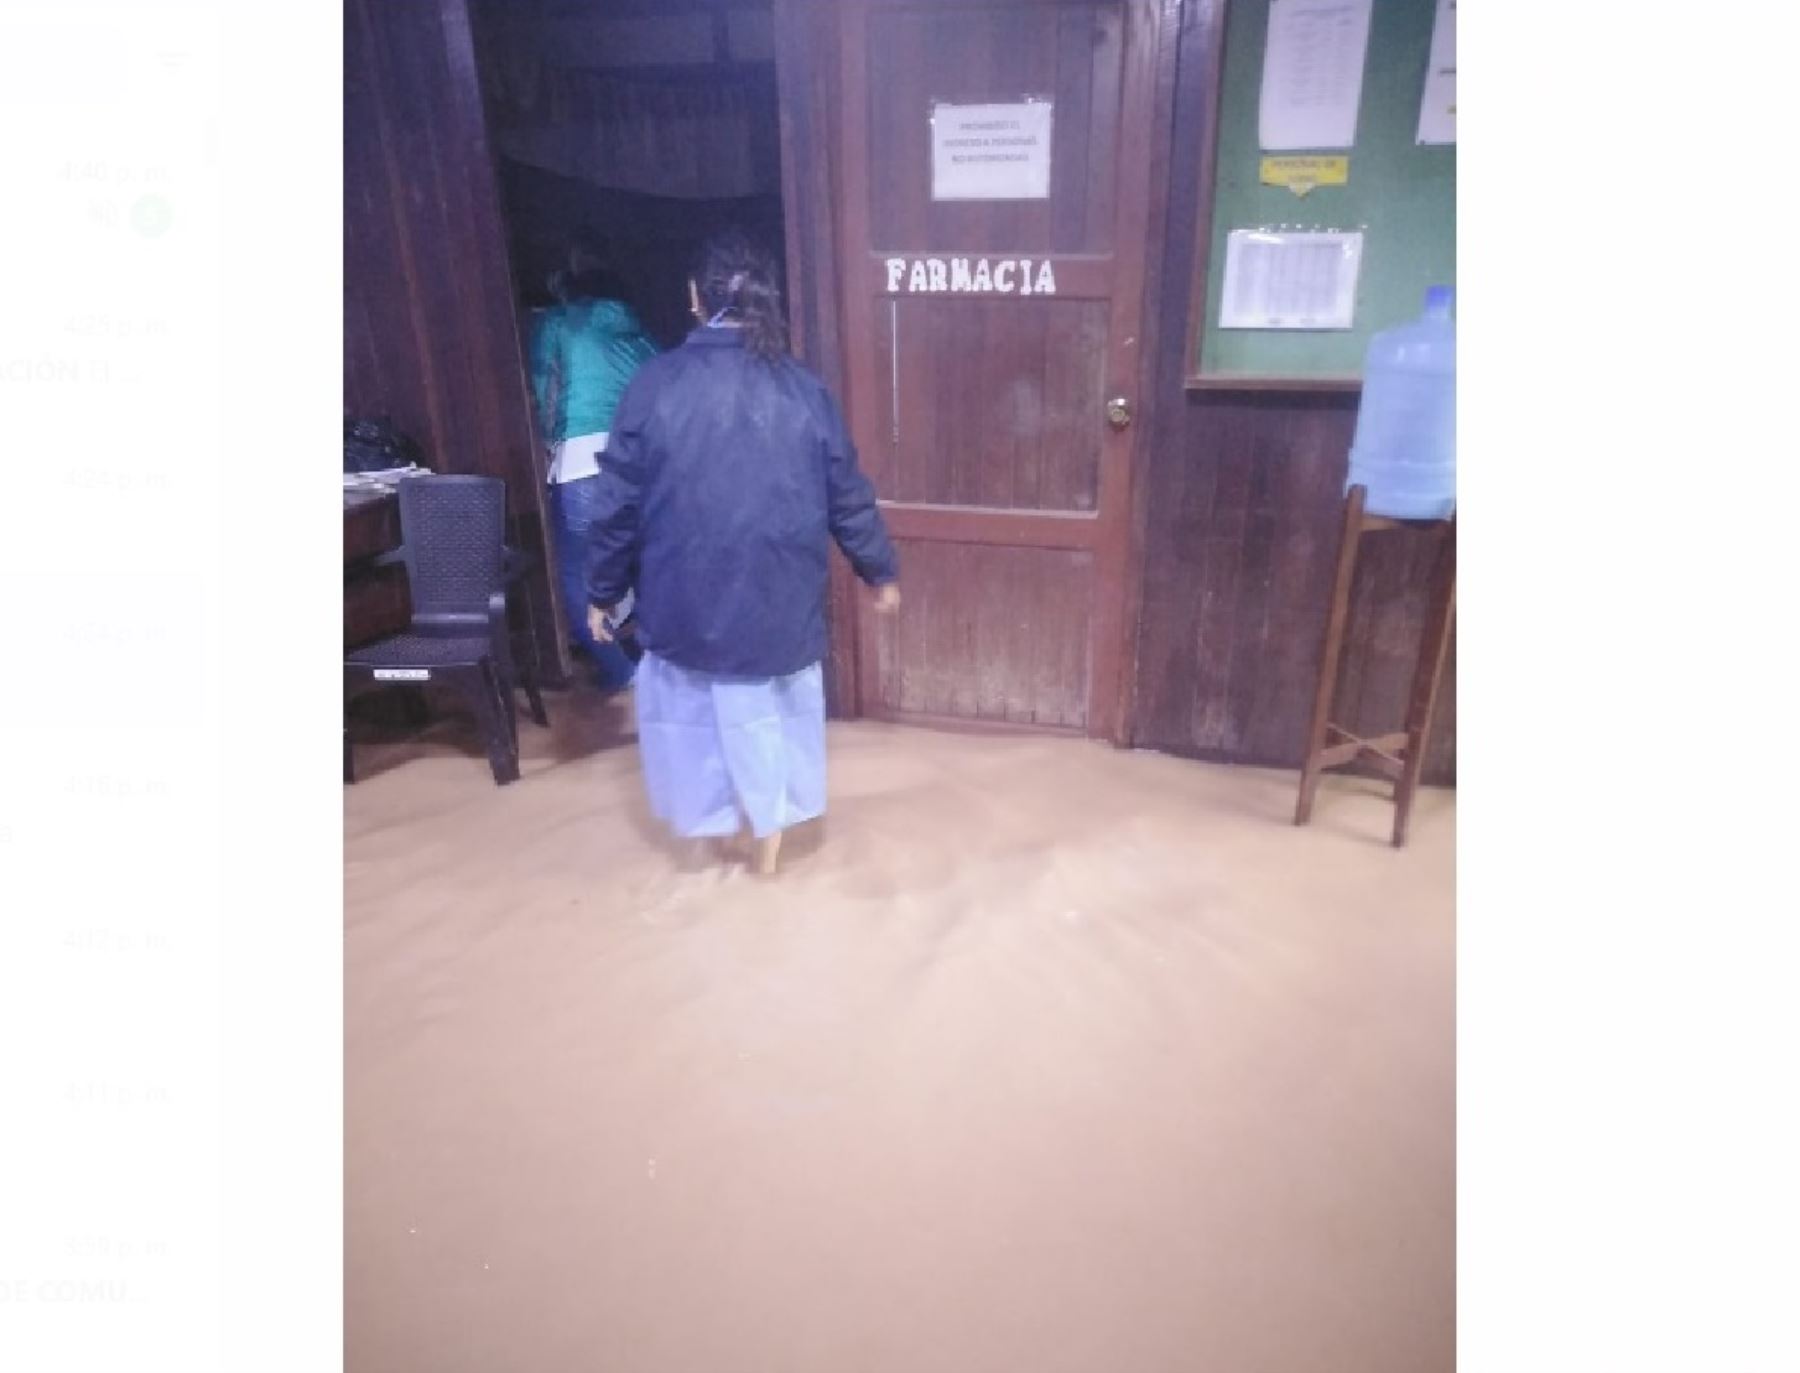 Lluvias intensas en provincia de Coronel Portillo, región Ucayali, causan daños en diversos establecimientos de salud.